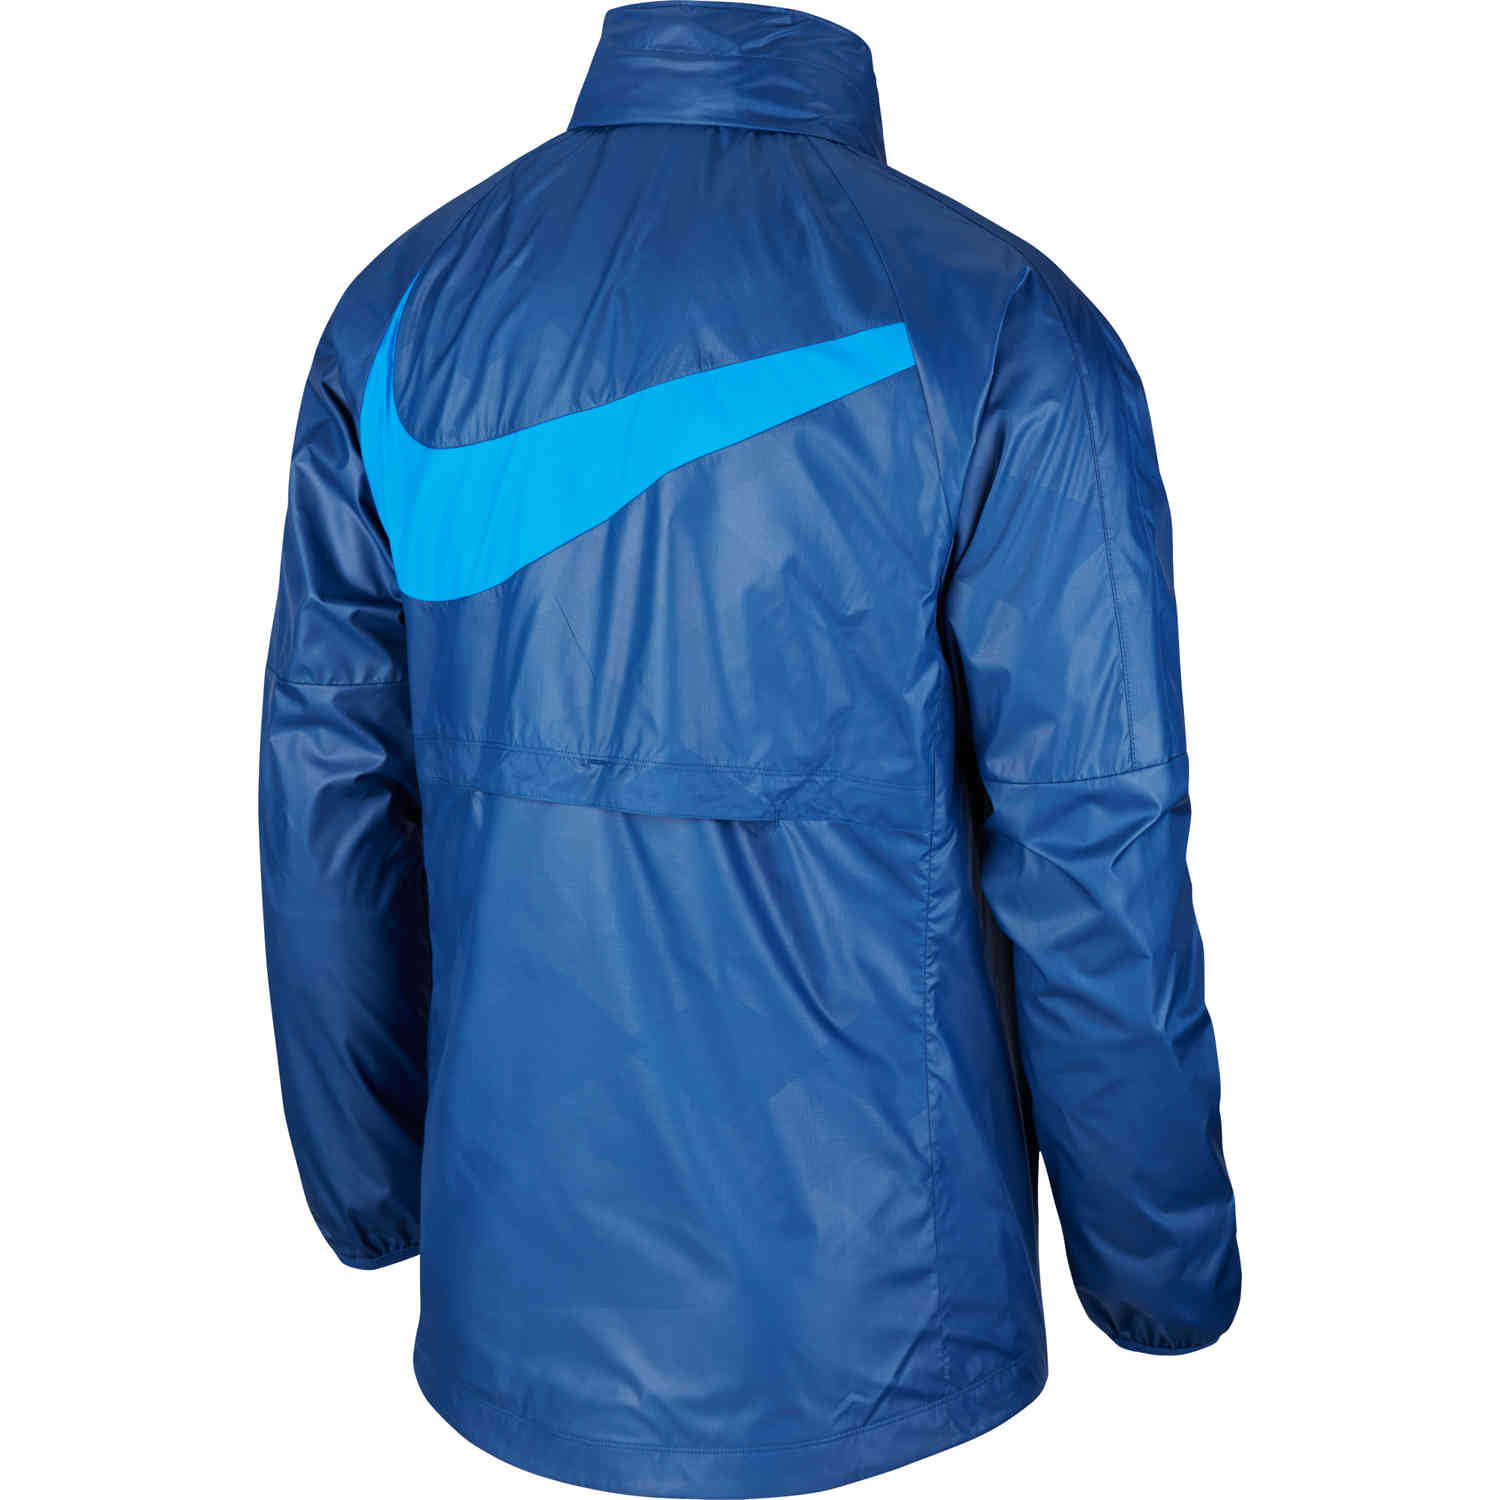 Nike Brazil AWF LTE Jacket - Coastal Blue & Soar - SoccerPro